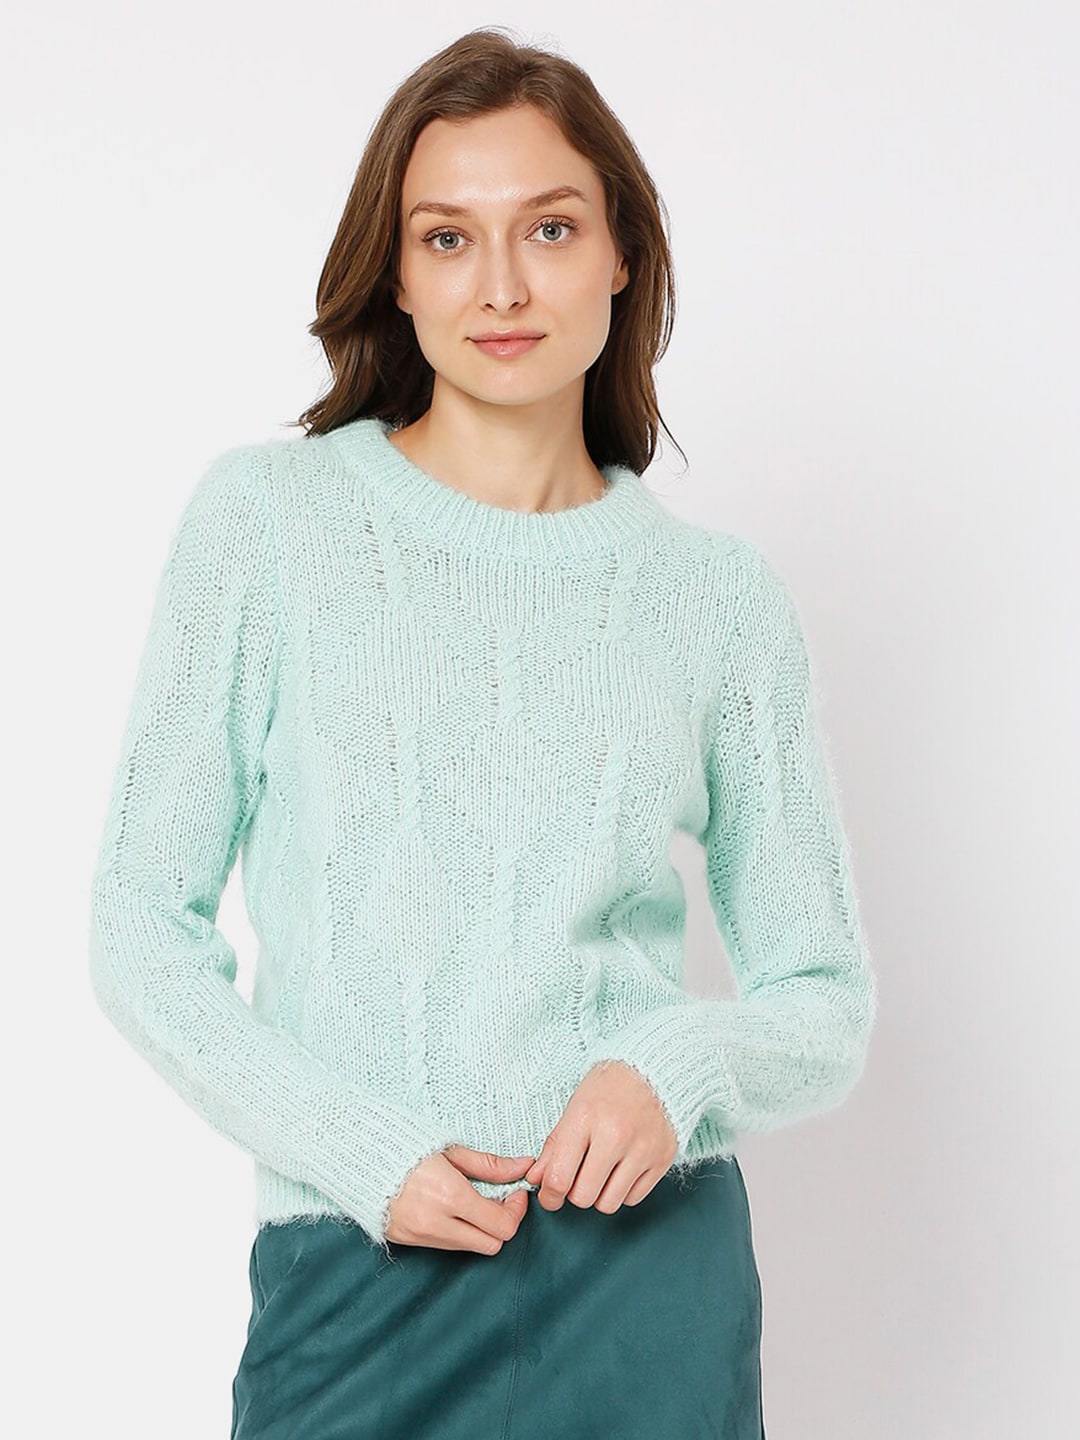 Vero Moda Women Green Cable Knit Pullover Sweater